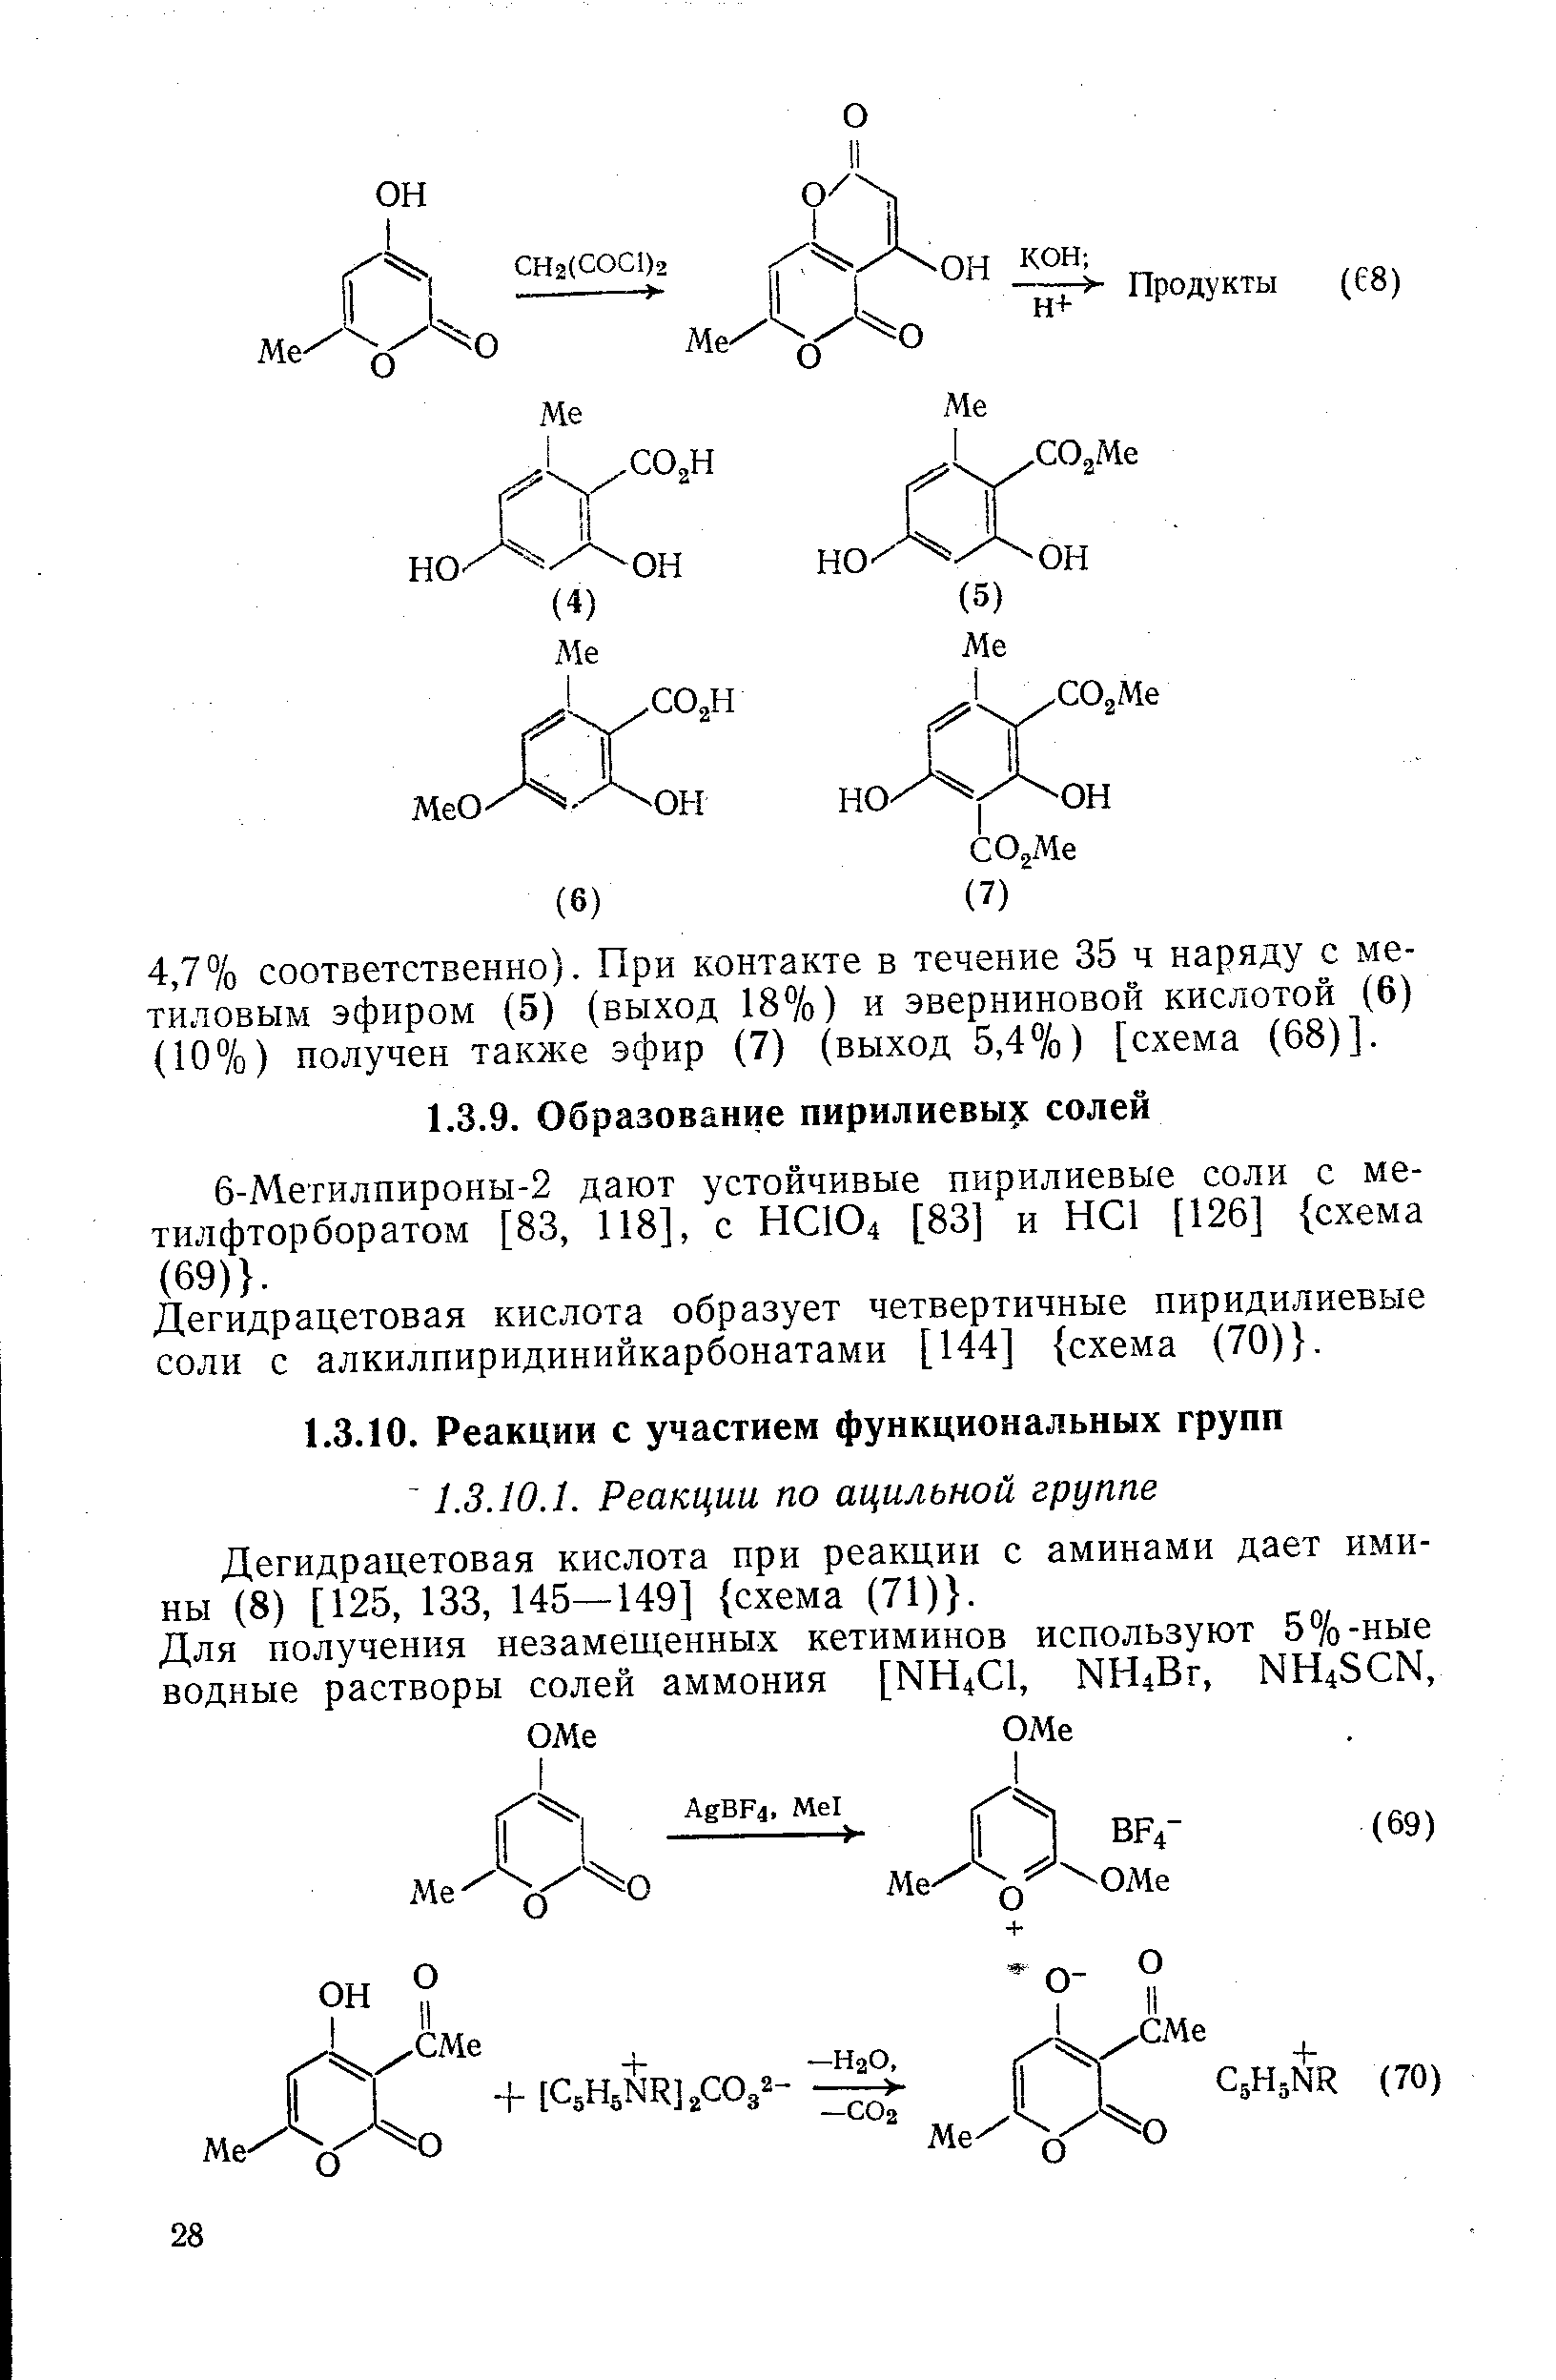 Дегидрацетовая кислота при реакции с аминами дает ими-ны (8) [125, 133, 145—149] схема (71) .